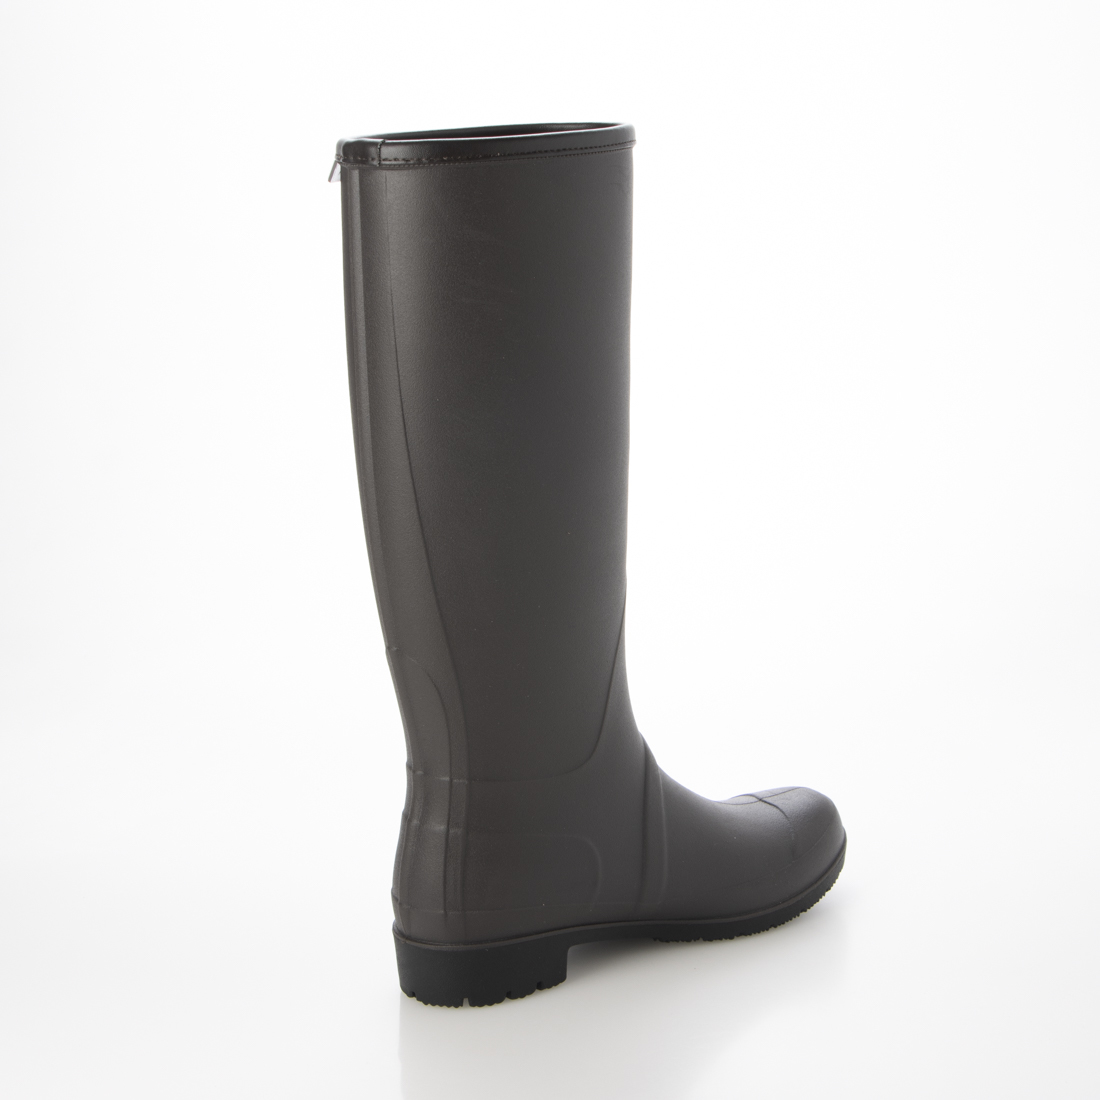  женский длинный влагостойкая обувь / новый товар [23028-DBR-LL]25.0cm~25.5cm резиновые сапоги сапоги дождь обувь сапоги 